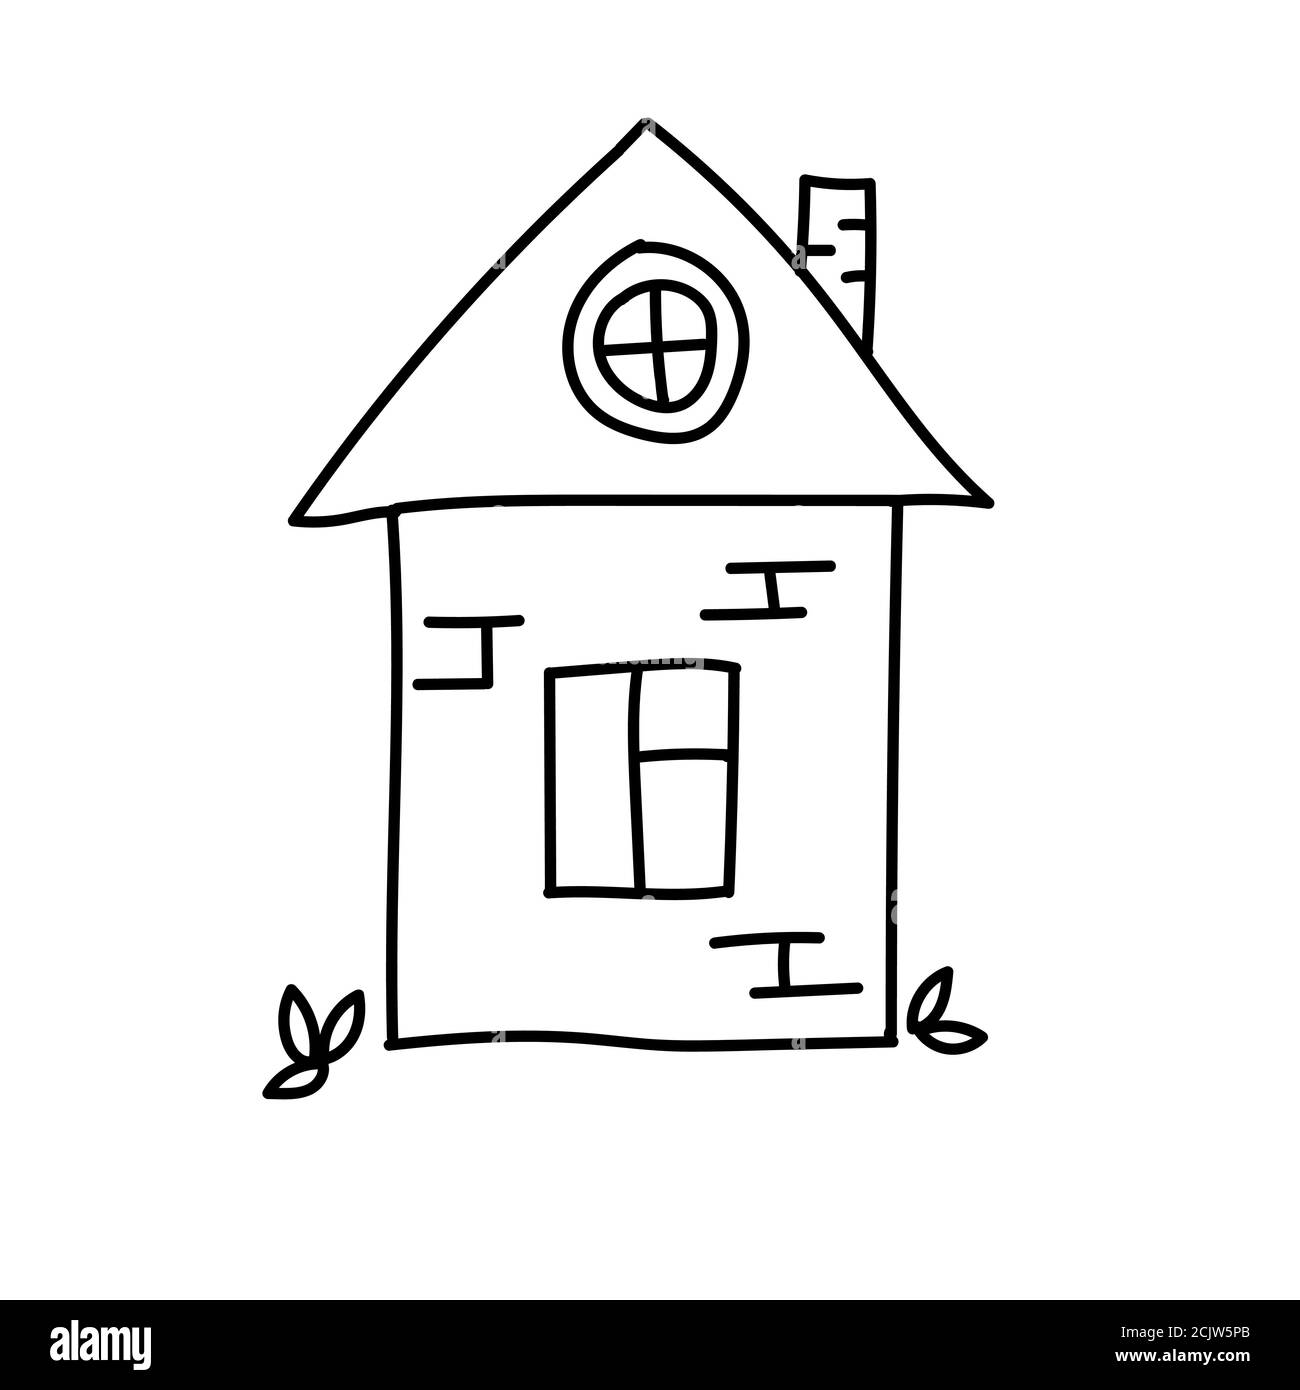 Handgezeichnetes Doodle House. Dünne schwarze Linie. Ovales Fenster auf dem Dach. Ziegelkamin. Vektorgrafik isoliert auf Weiß. Stock Vektor